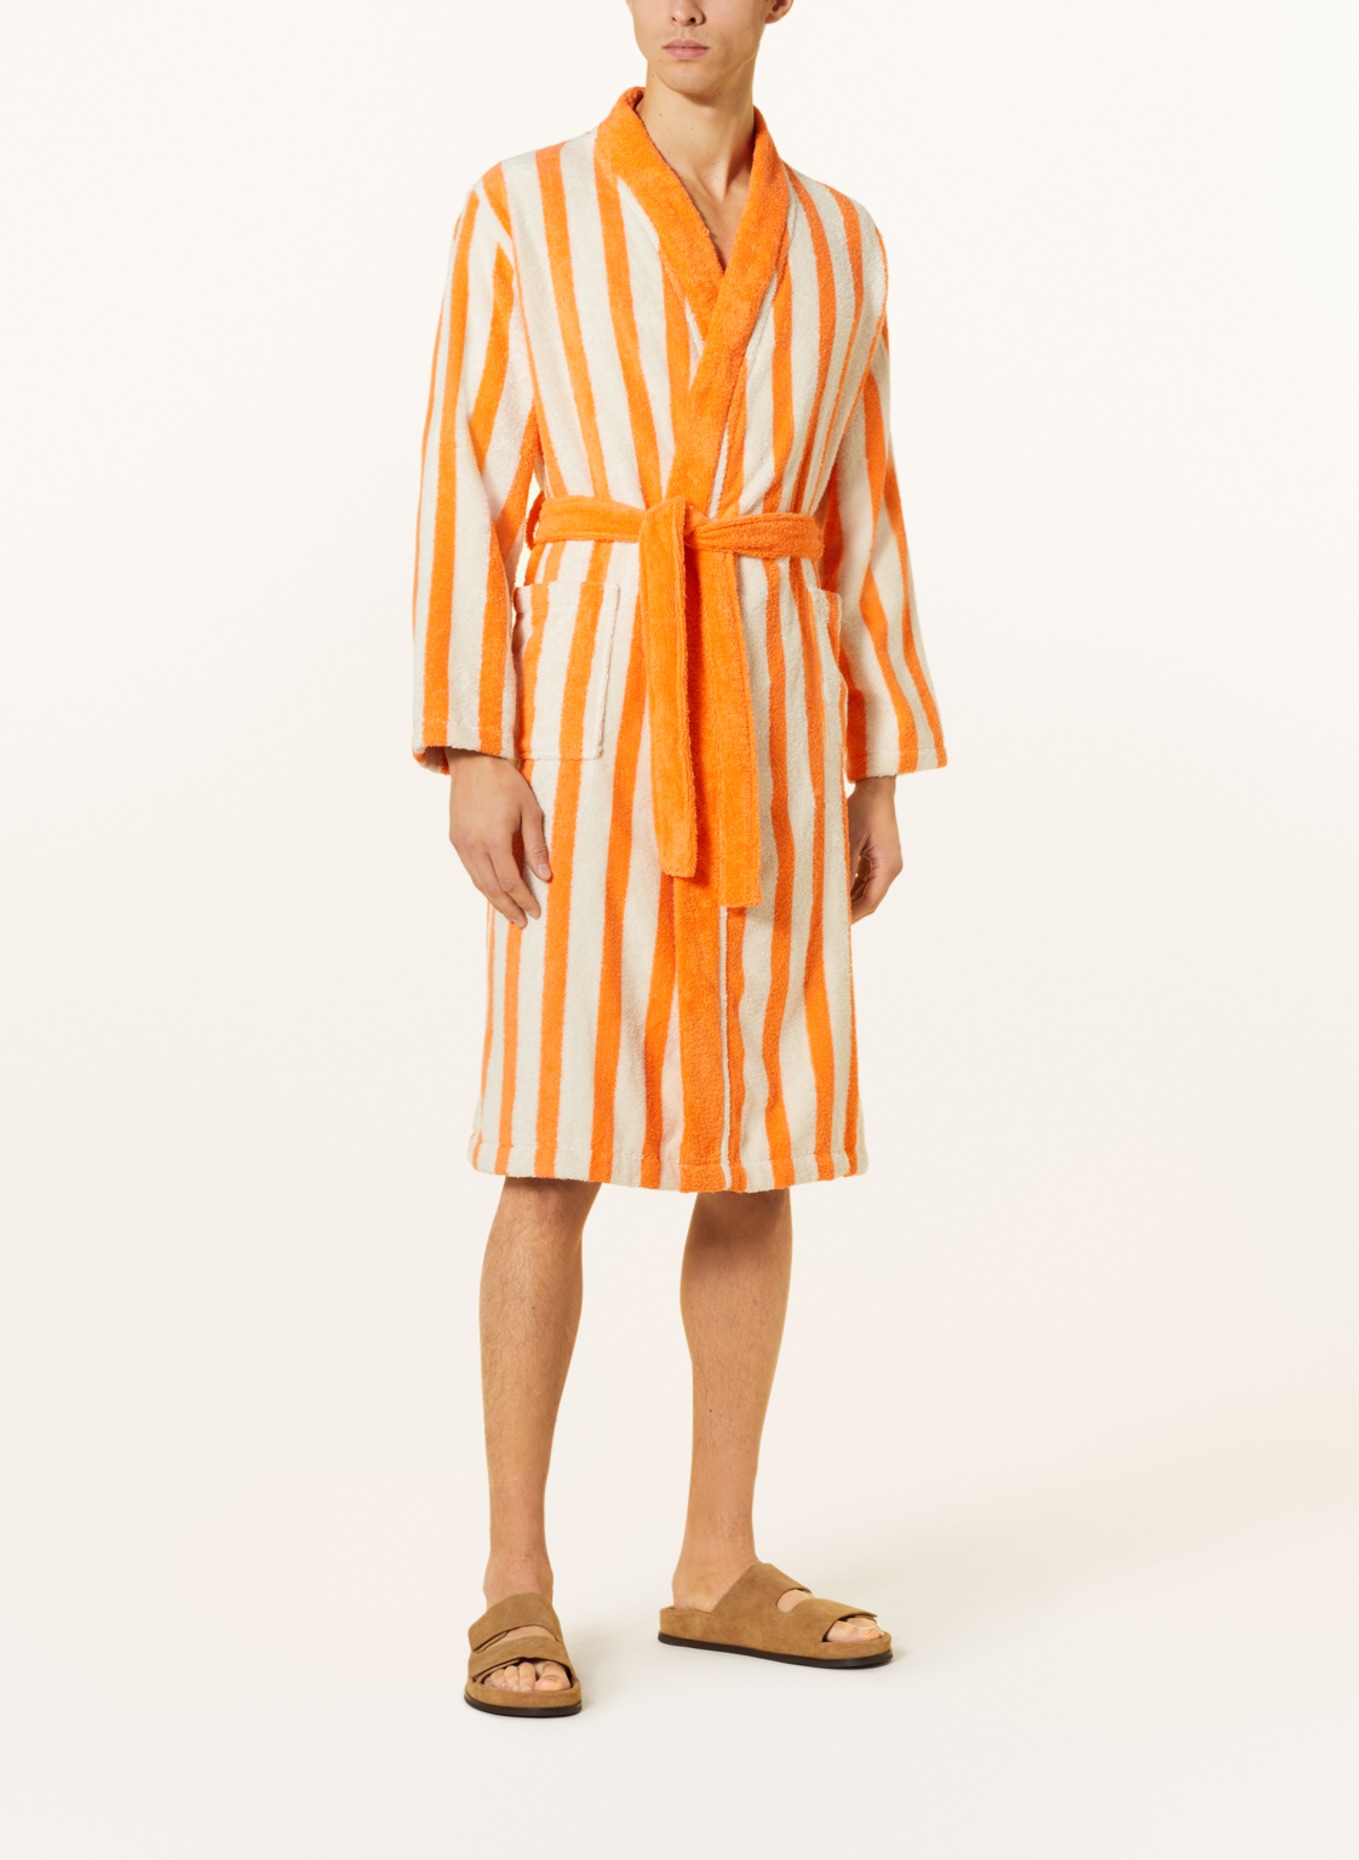 Marc O'Polo Women’s bathrobe, Color: ORANGE/ CREAM (Image 2)